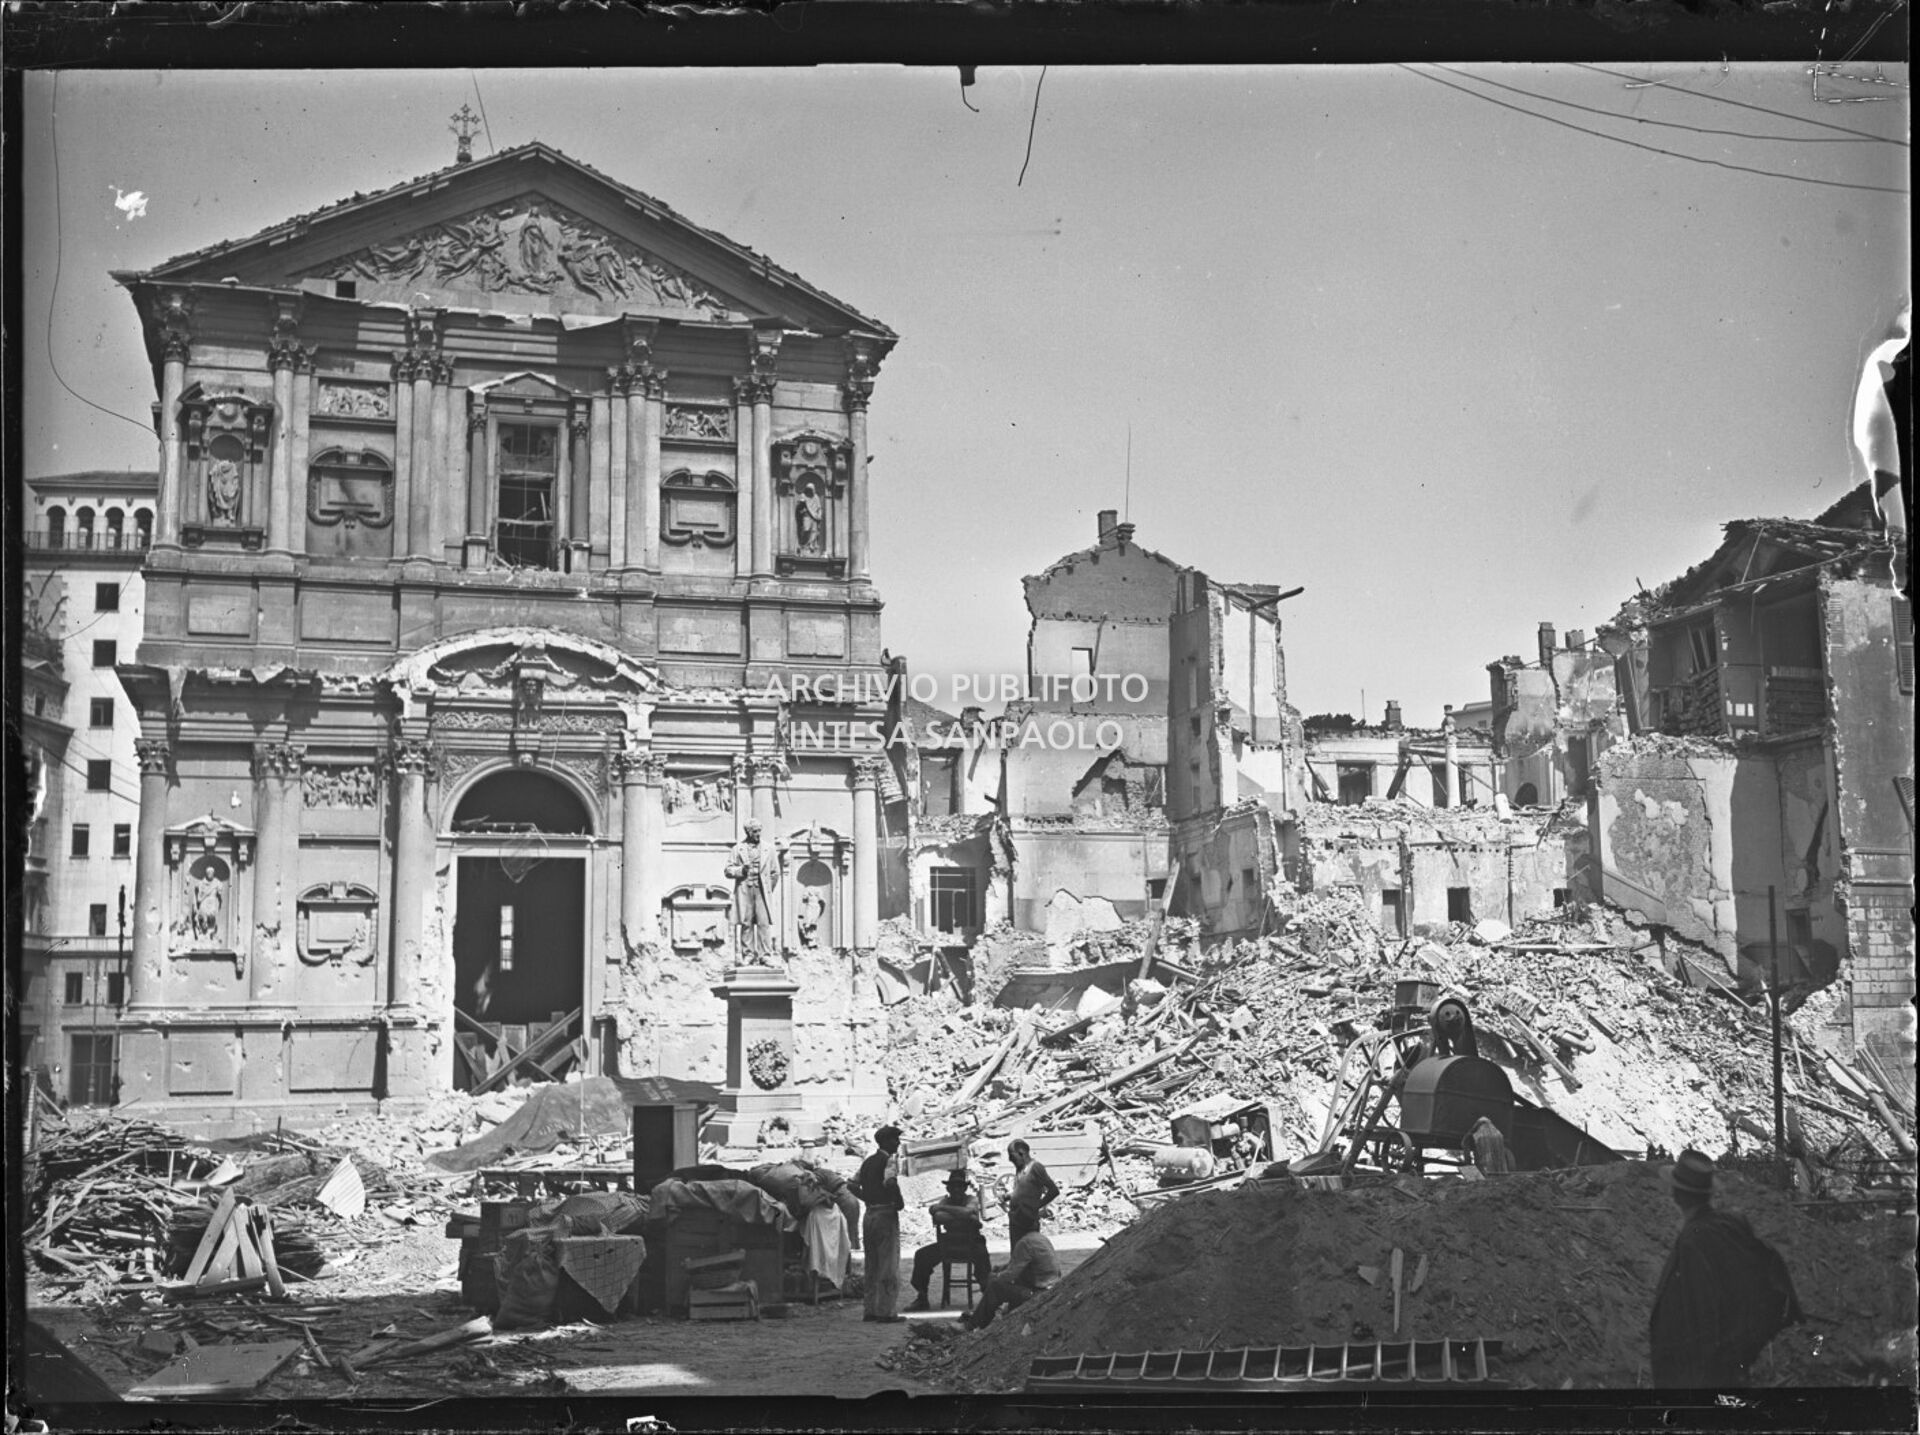 Chiesa di San Fedele, nell'omonima piazza a Milano, gravemente danneggiata dai bombardamenti; sulla destra l'edificio che ospitava la questura della città, completamente distrutto; davanti alla chiesa il monumento a Alessandro Manzoni intatto